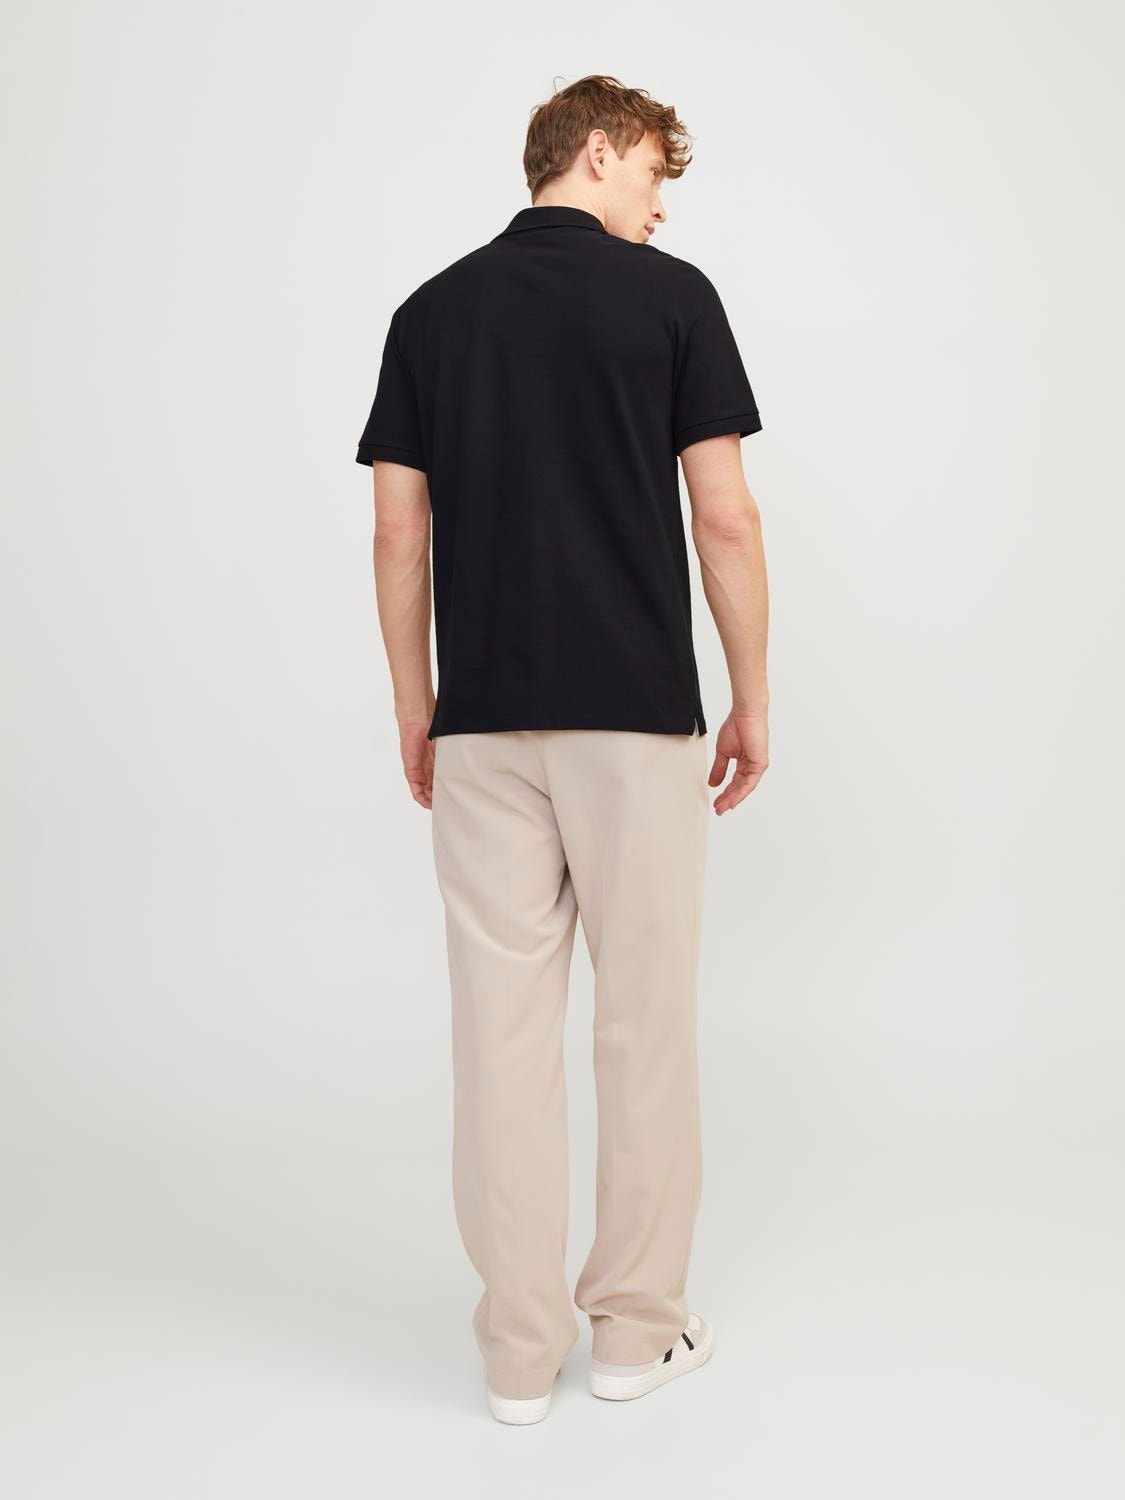 Jack & Jones Gedrukt Polo T-shirt -Black - 12247387